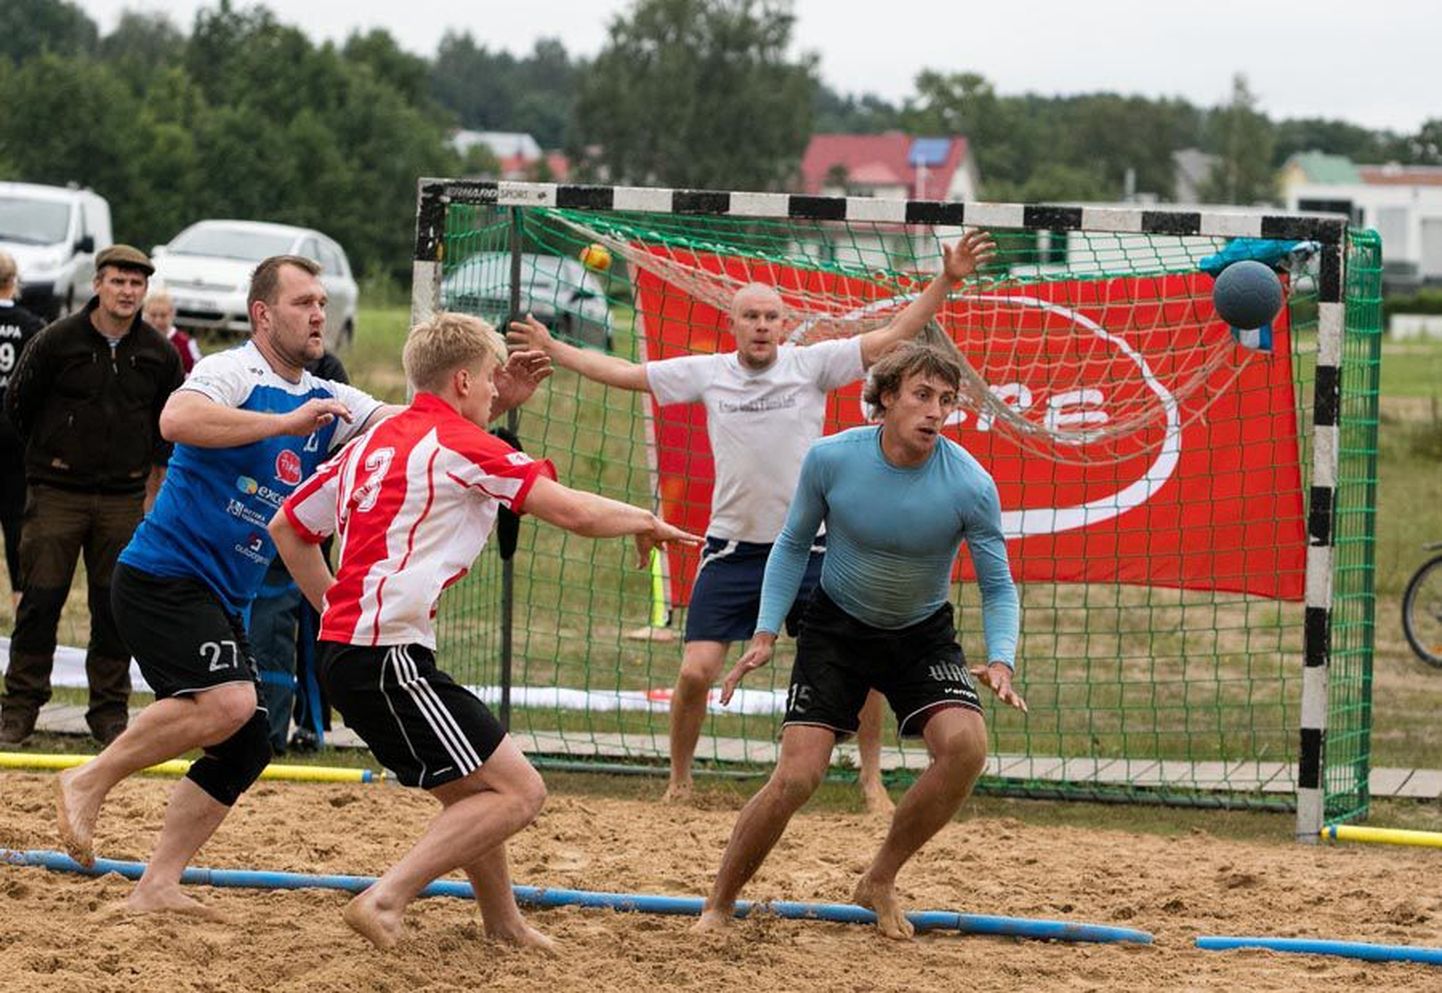 Laupäeval selgusid Viljandi järve ääres Eesti rannakäsipalli meistrid, võõrustajad võtsid võidu meeste ja 2003. aastal sündinud noormeeste mõõduvõtul.